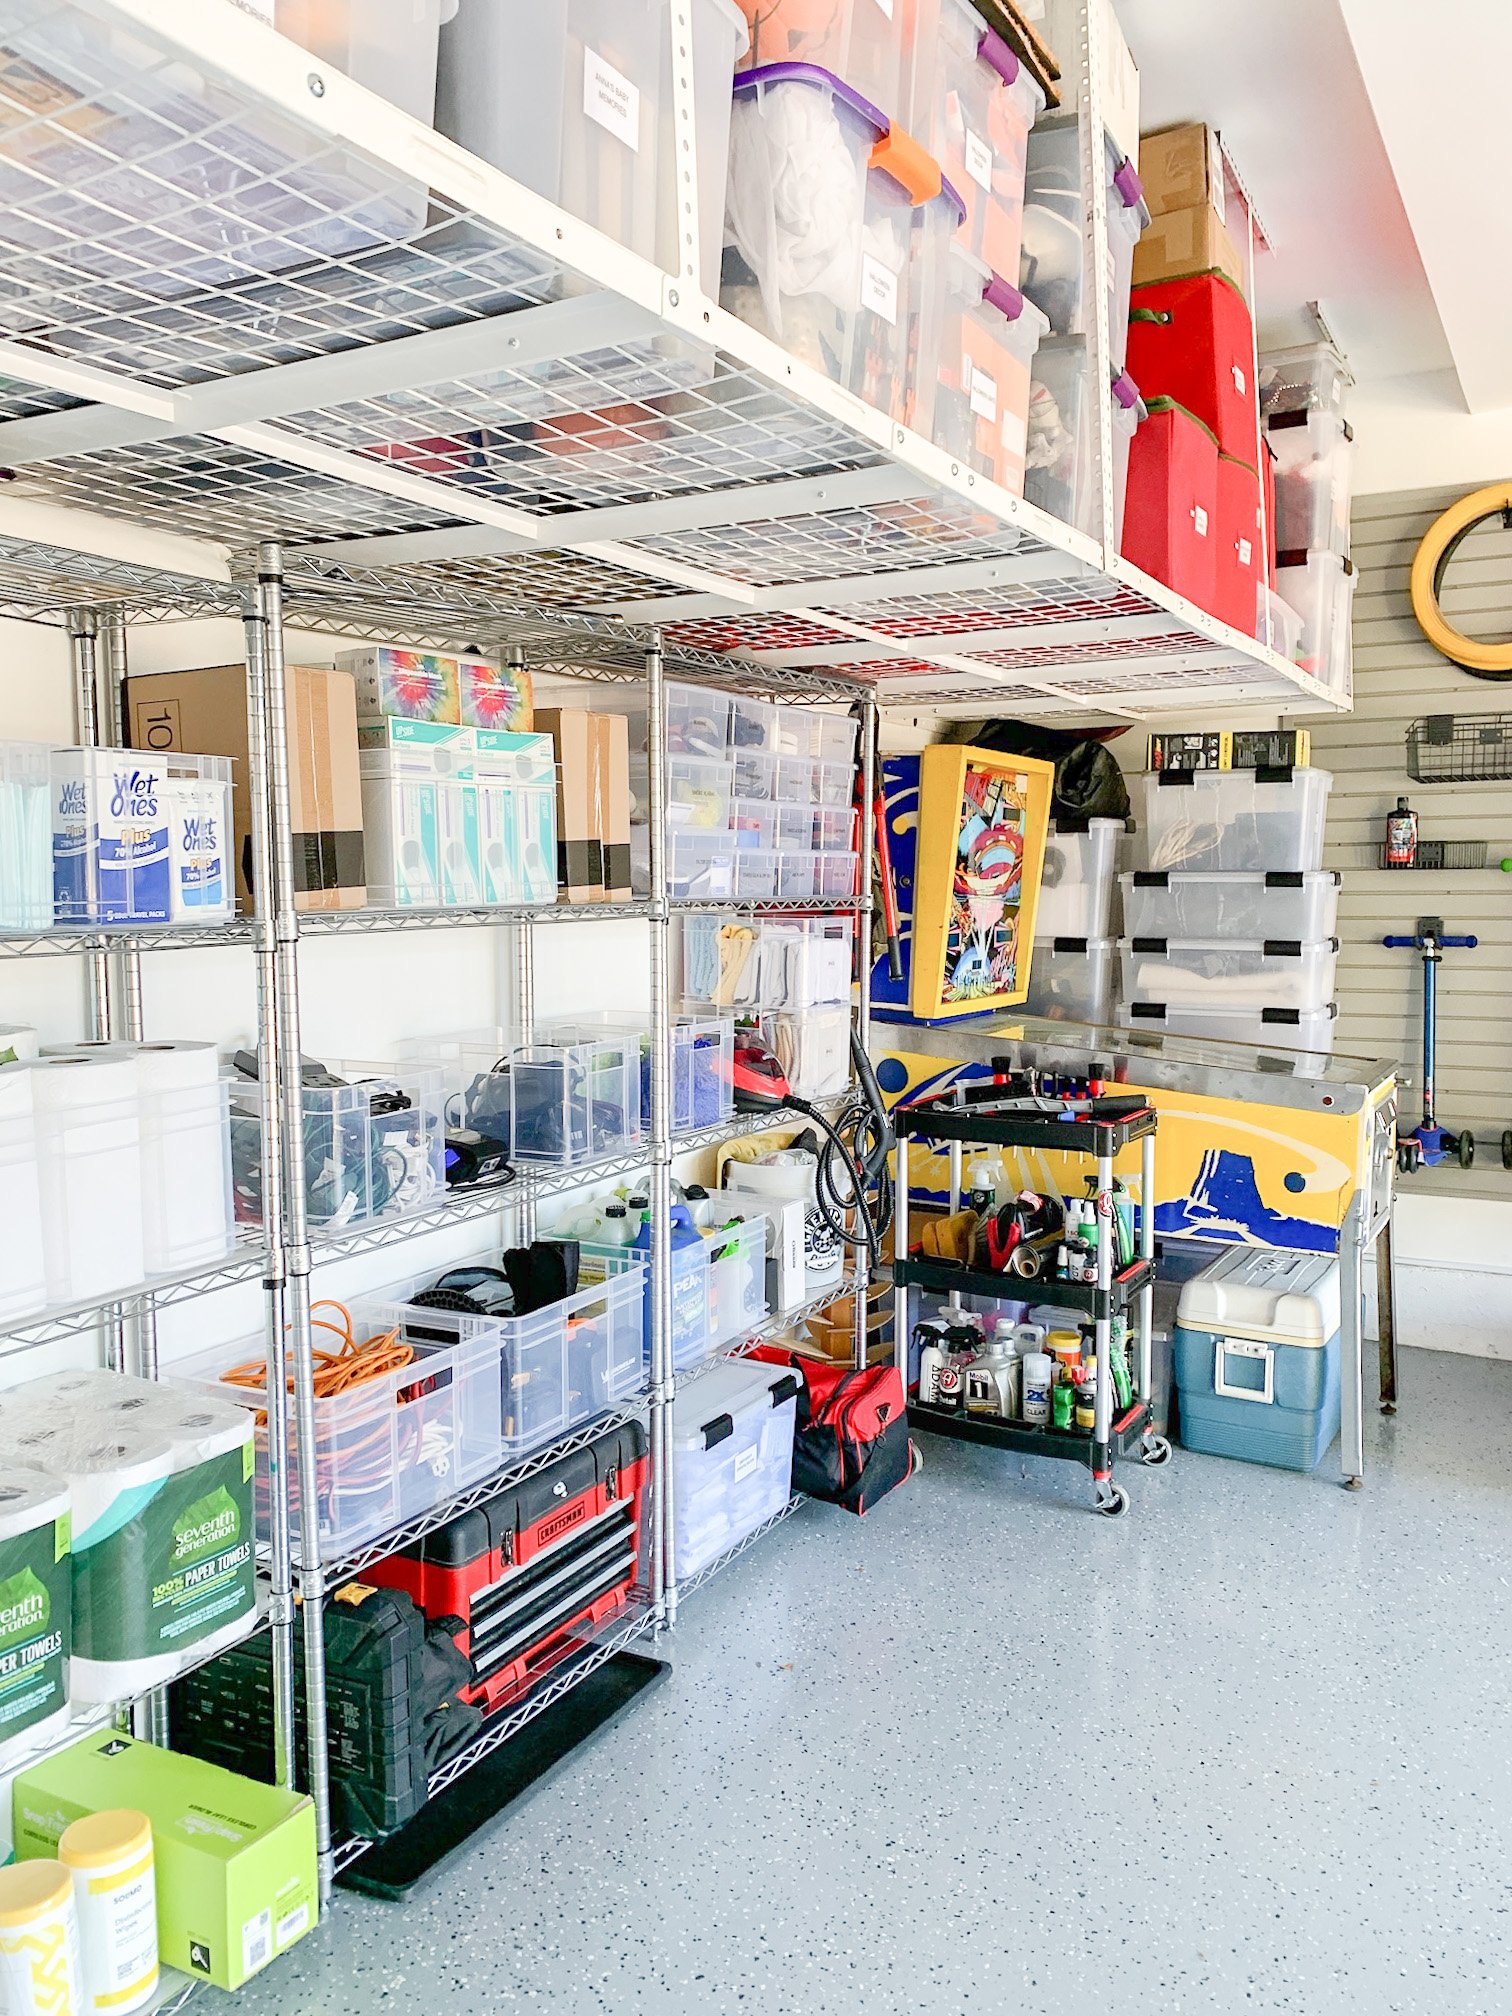 Garage Organization & Storage Ideas